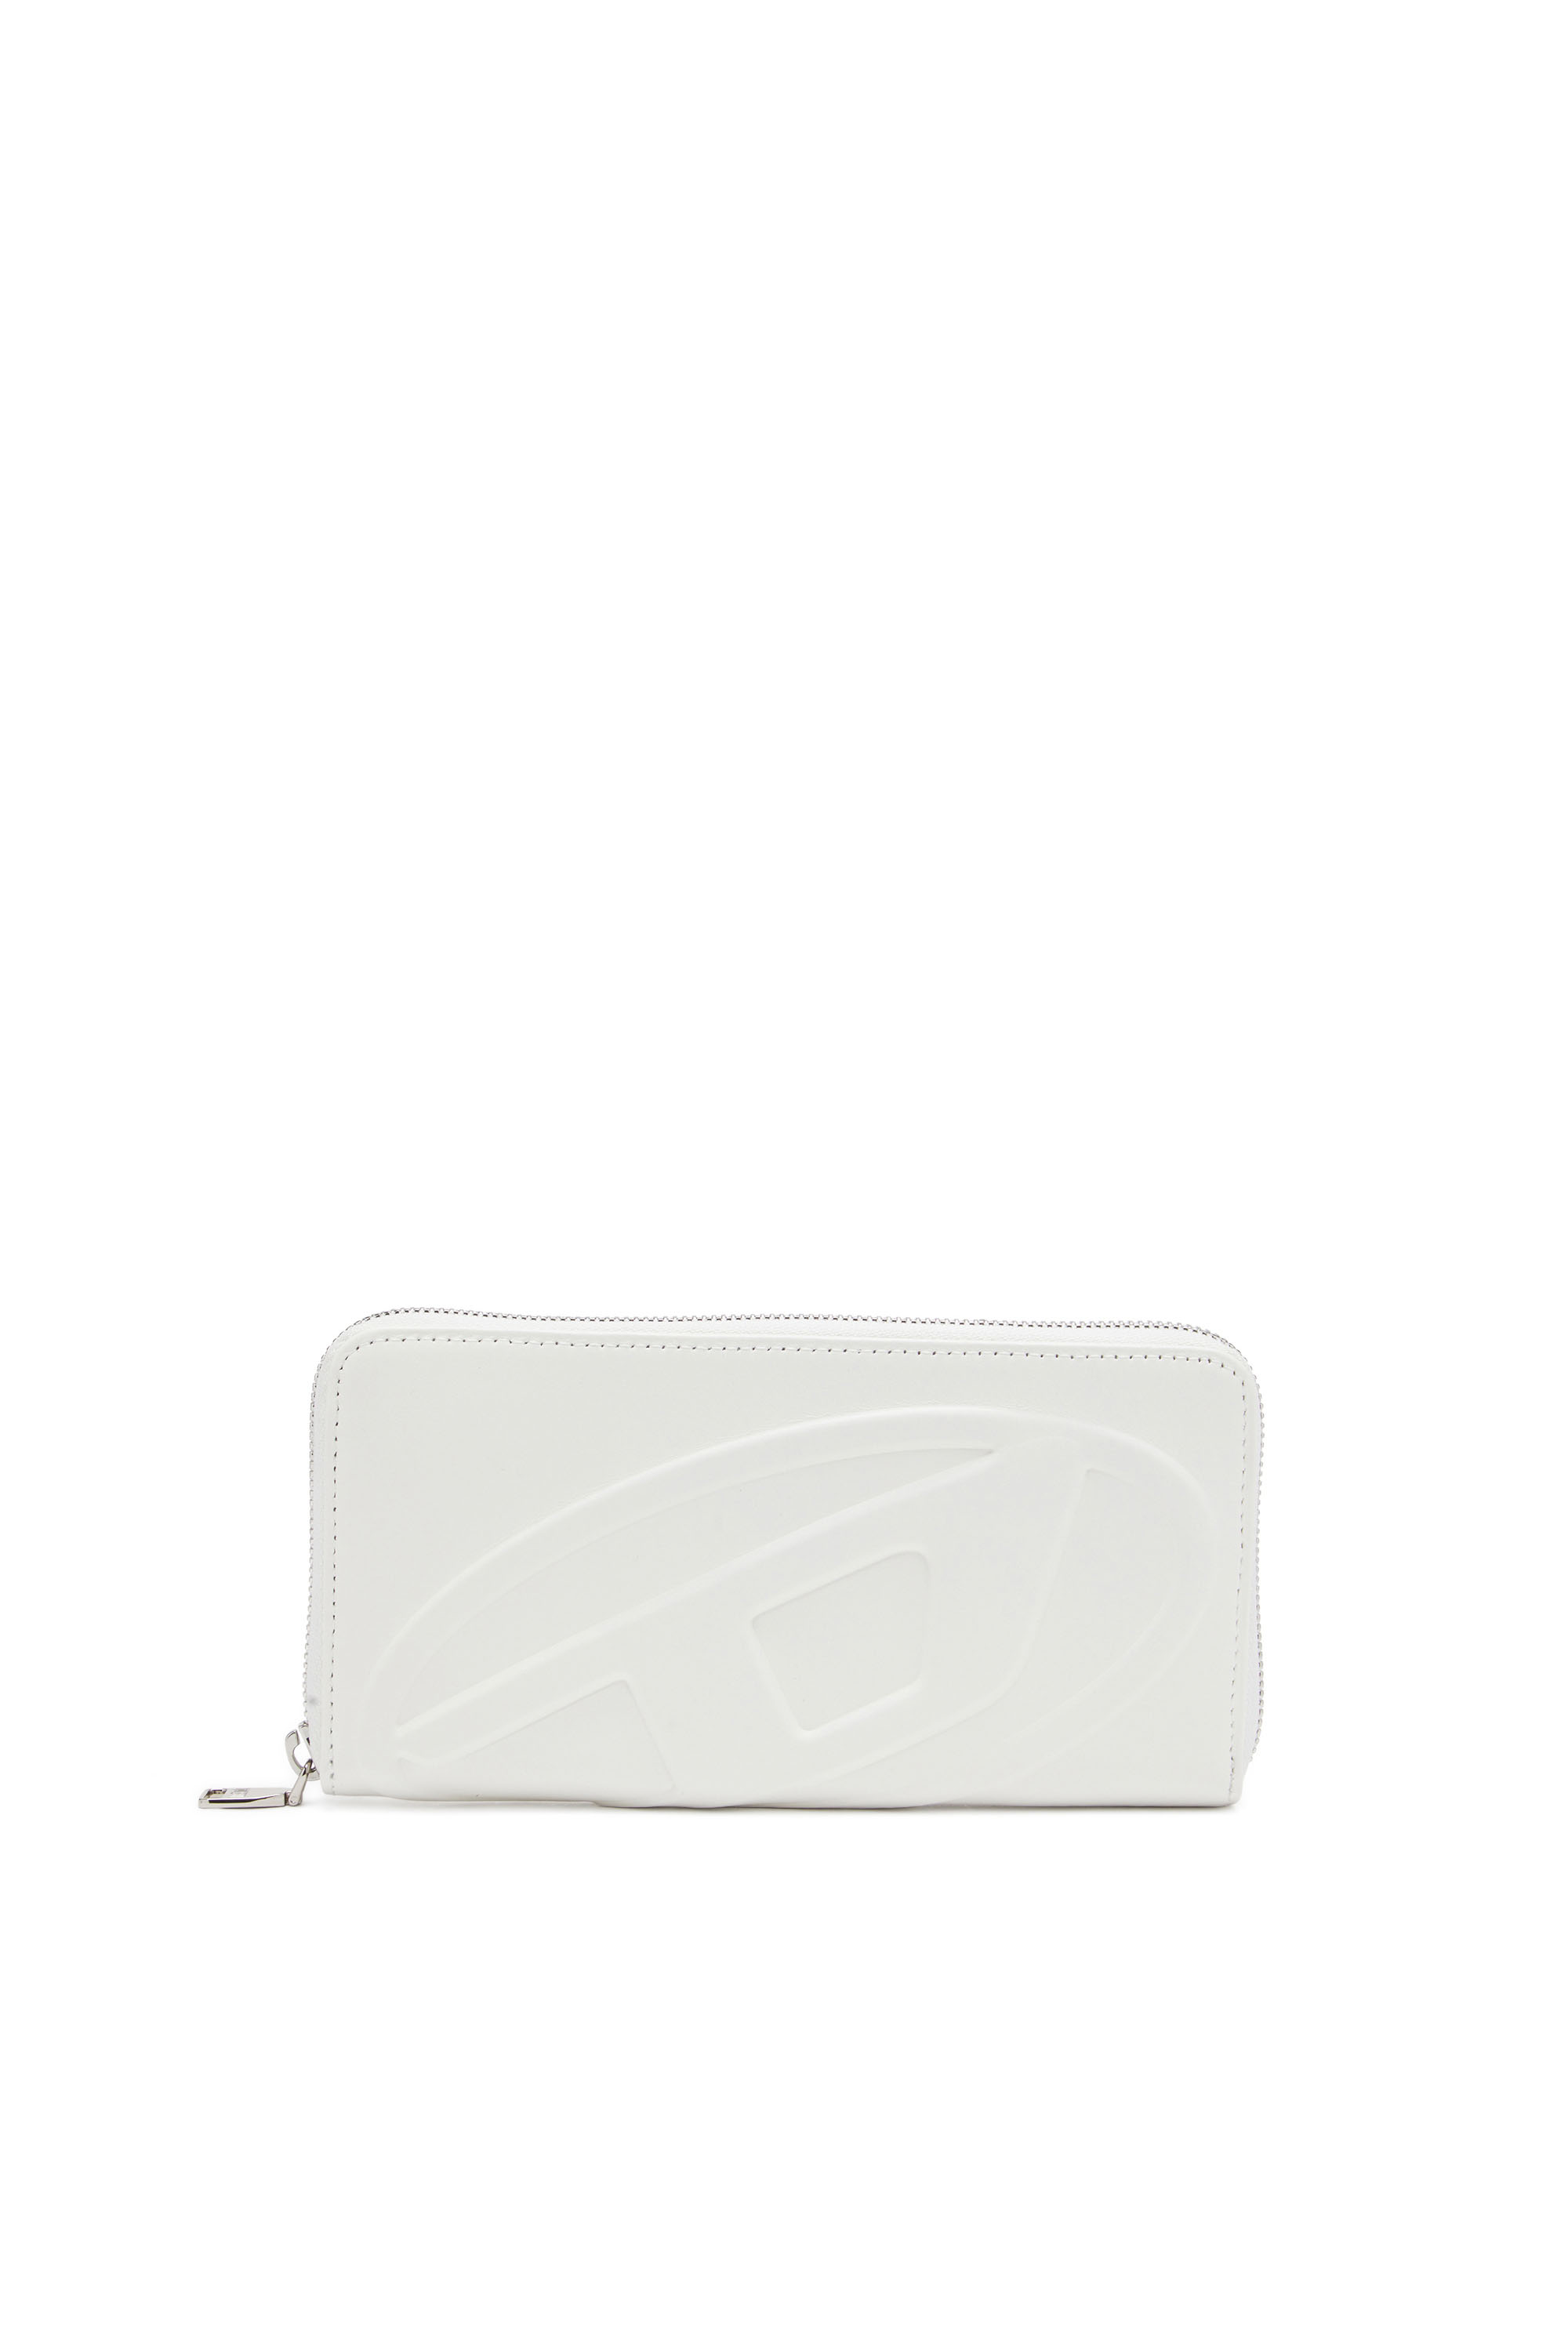 Diesel - Long portefeuille zippé avec logo embossé - Portefeuilles Zippés - Femme - Blanc